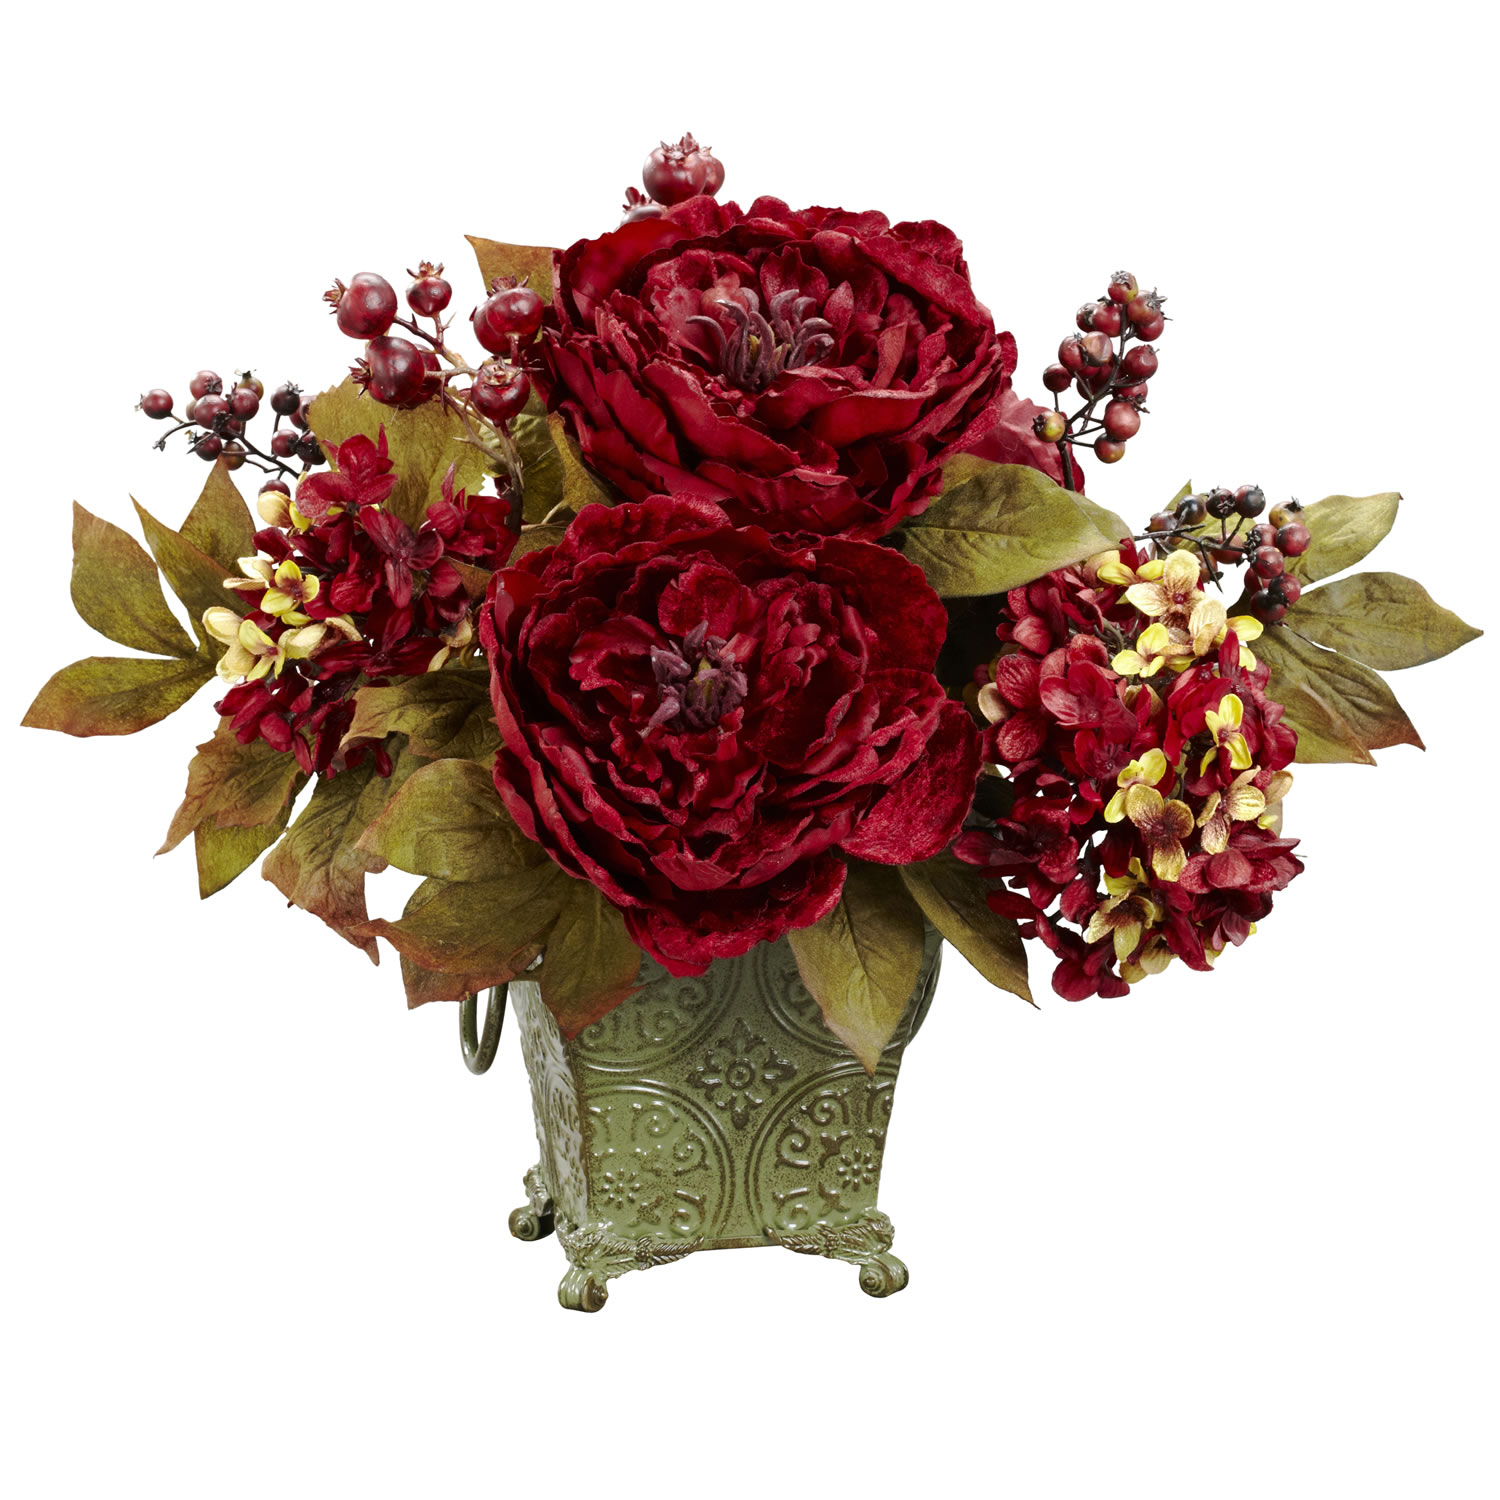 Tuyển tập hình ảnh hoa mẫu đơn đỏ đẹp nhất mời bạn chiêm ngưỡng - [Kích thước hình ảnh: 1500x1500 px]